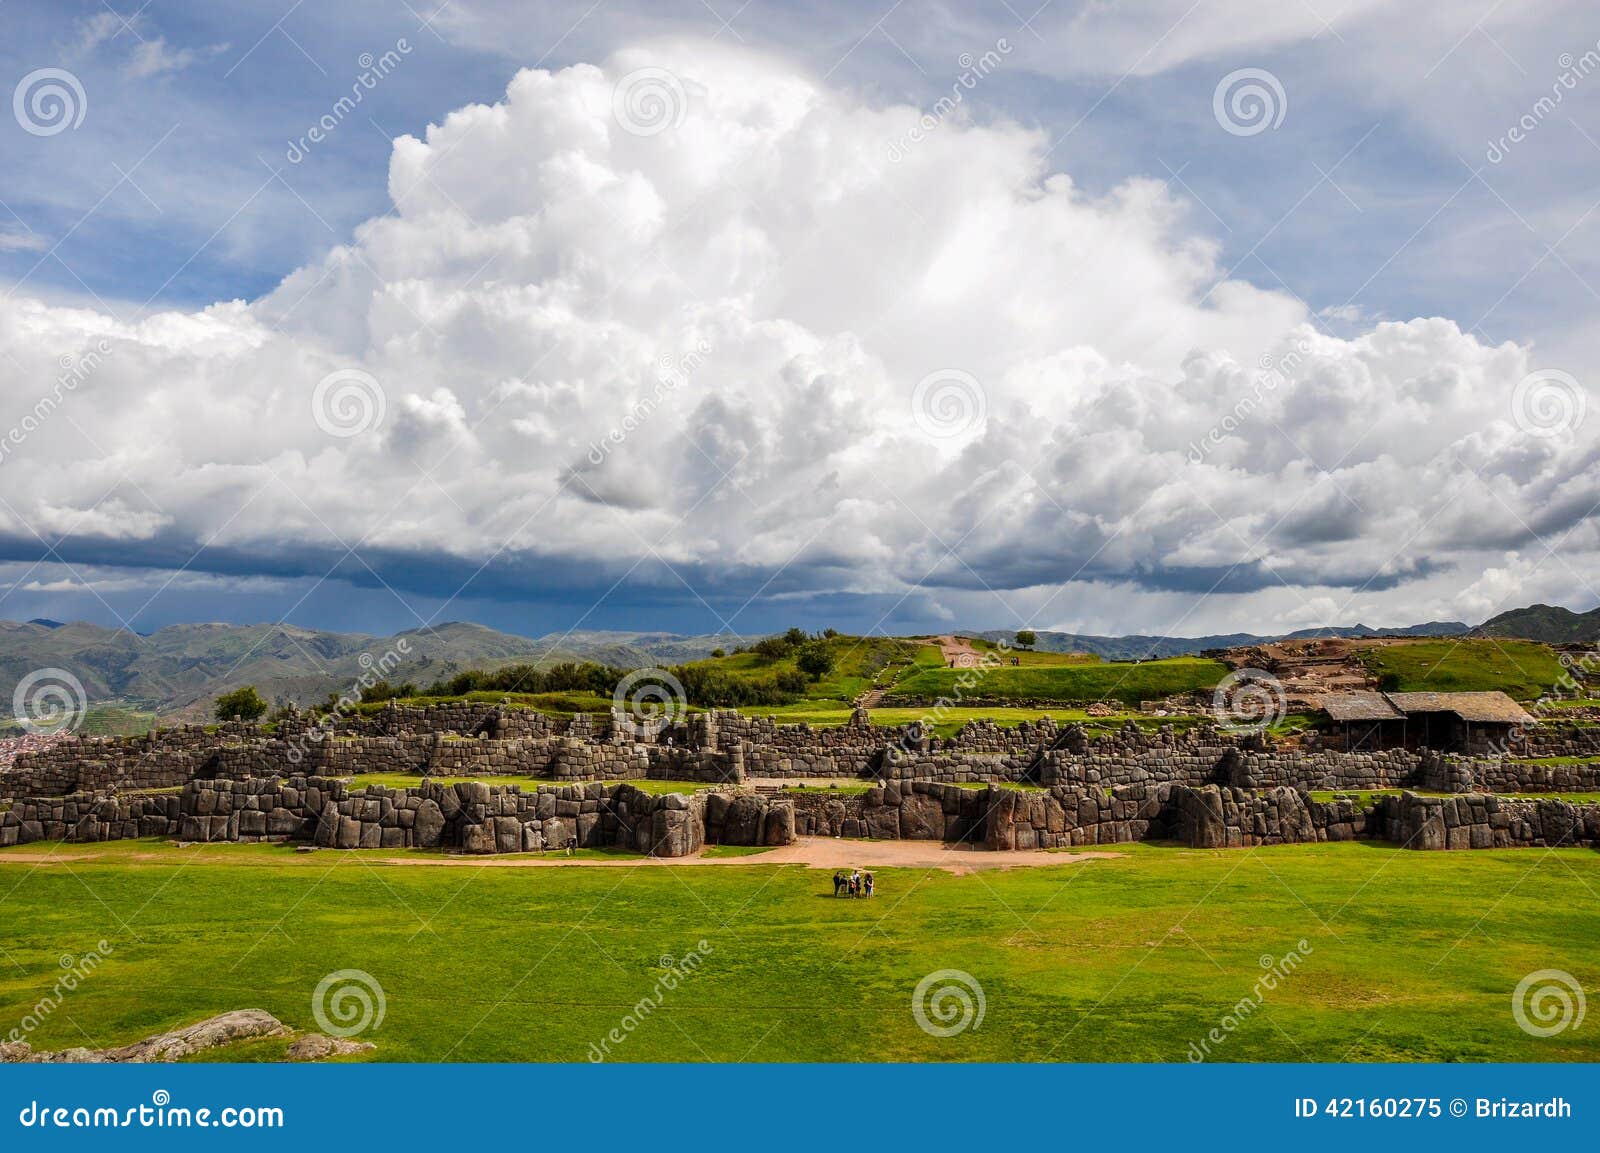 saqsaywaman incas ruins near cusco, peru